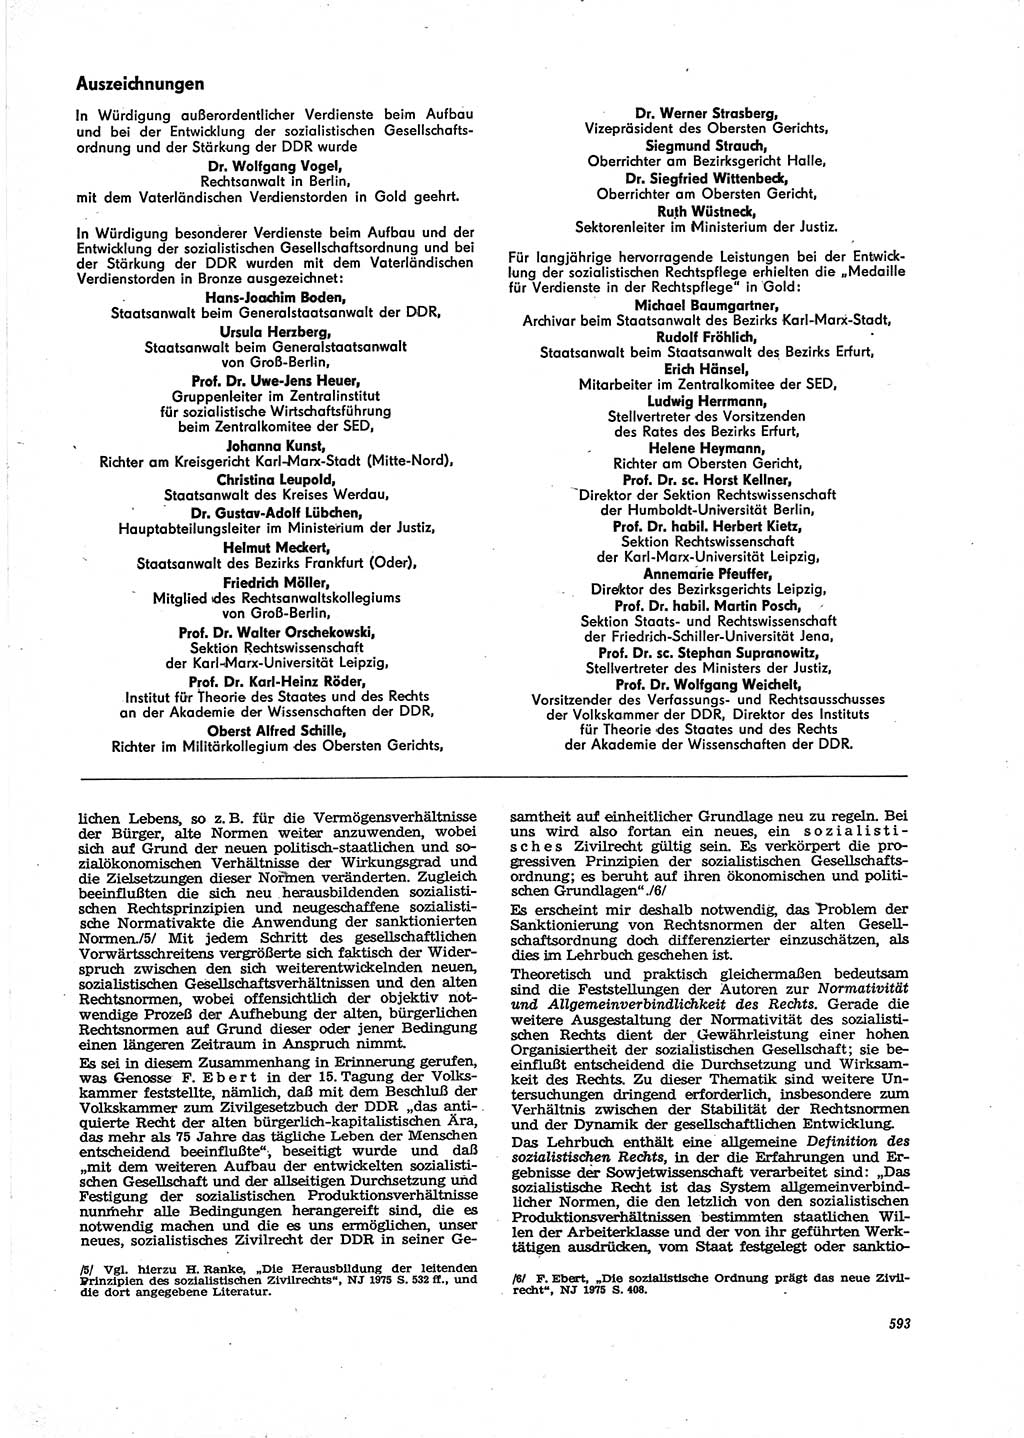 Neue Justiz (NJ), Zeitschrift für Recht und Rechtswissenschaft [Deutsche Demokratische Republik (DDR)], 29. Jahrgang 1975, Seite 593 (NJ DDR 1975, S. 593)